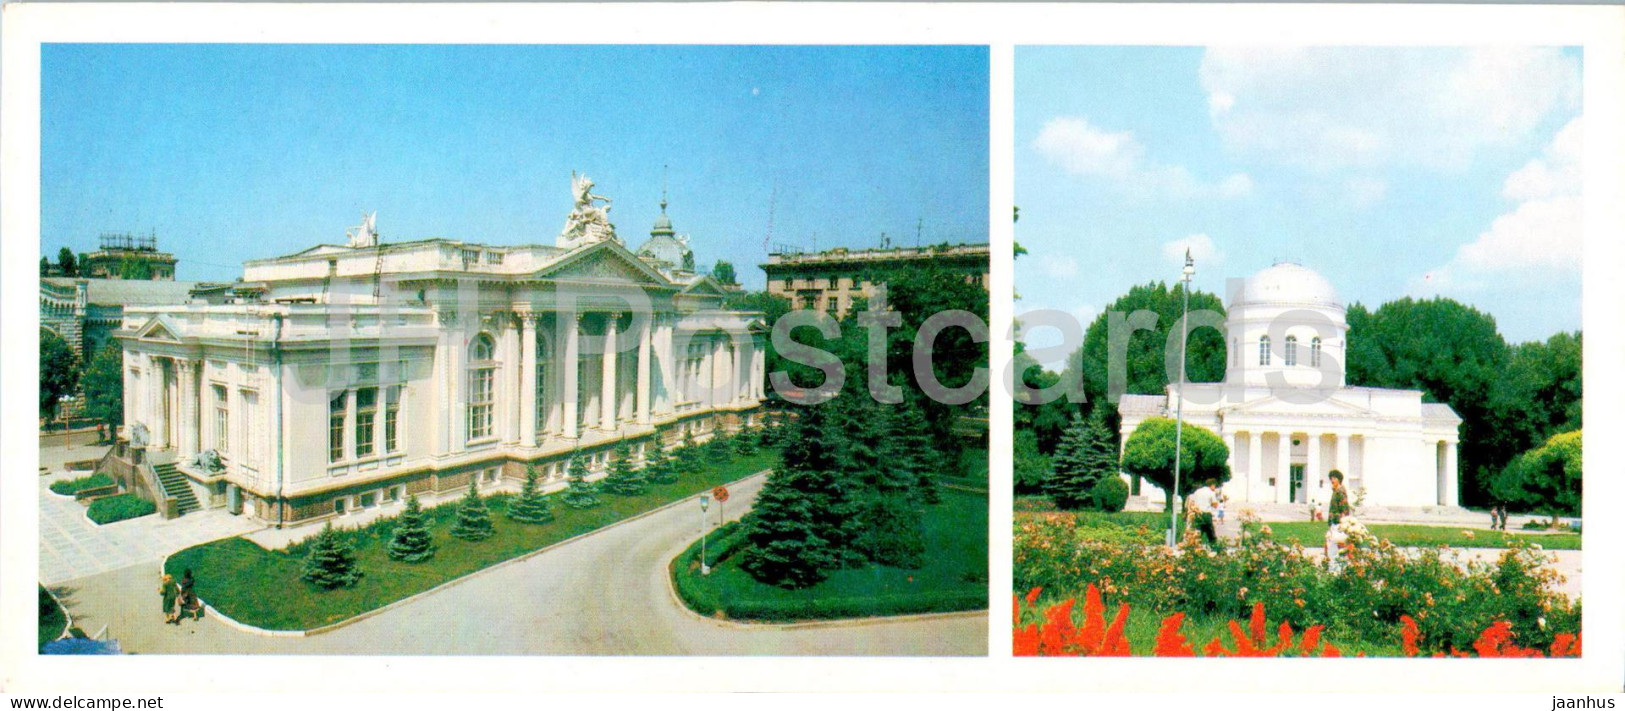 Chisinau - Organ Hall - Exhibition Hall - 1985 - Moldova USSR - Unused - Moldova